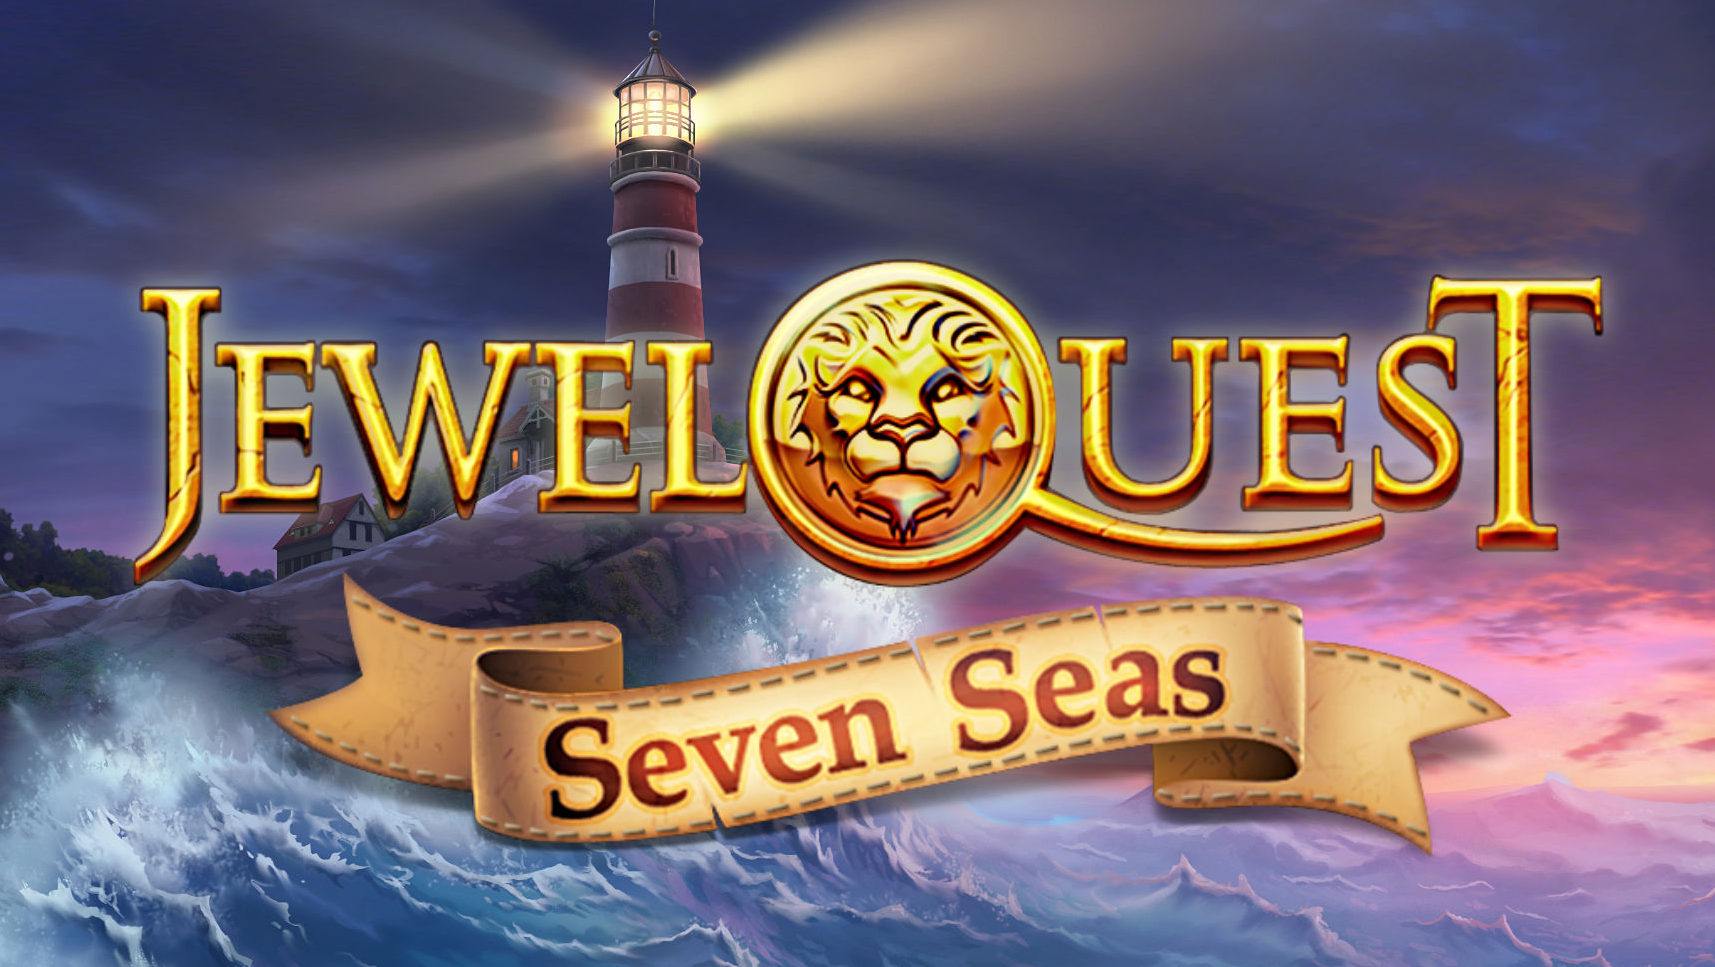 Jewel Quest Seven Seas